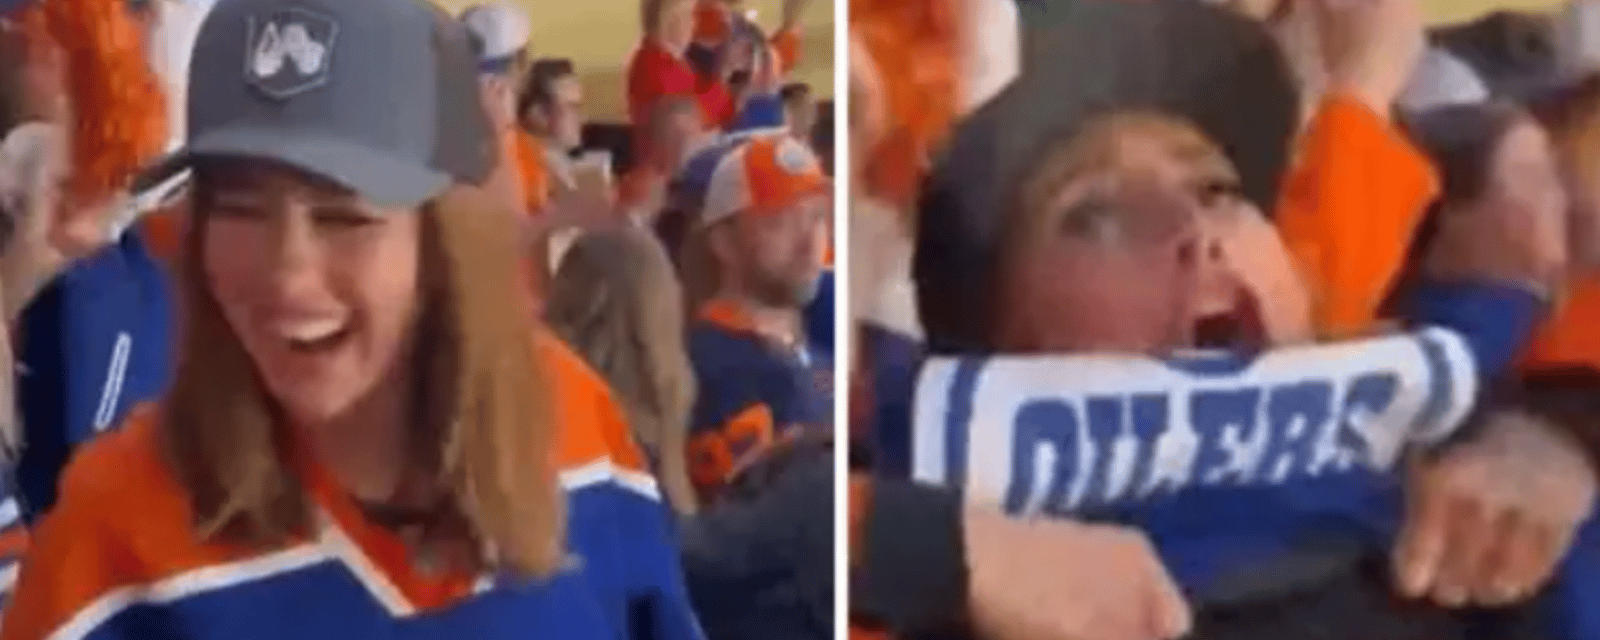 Une fan des Oilers devient virale après une célébration audacieuse 